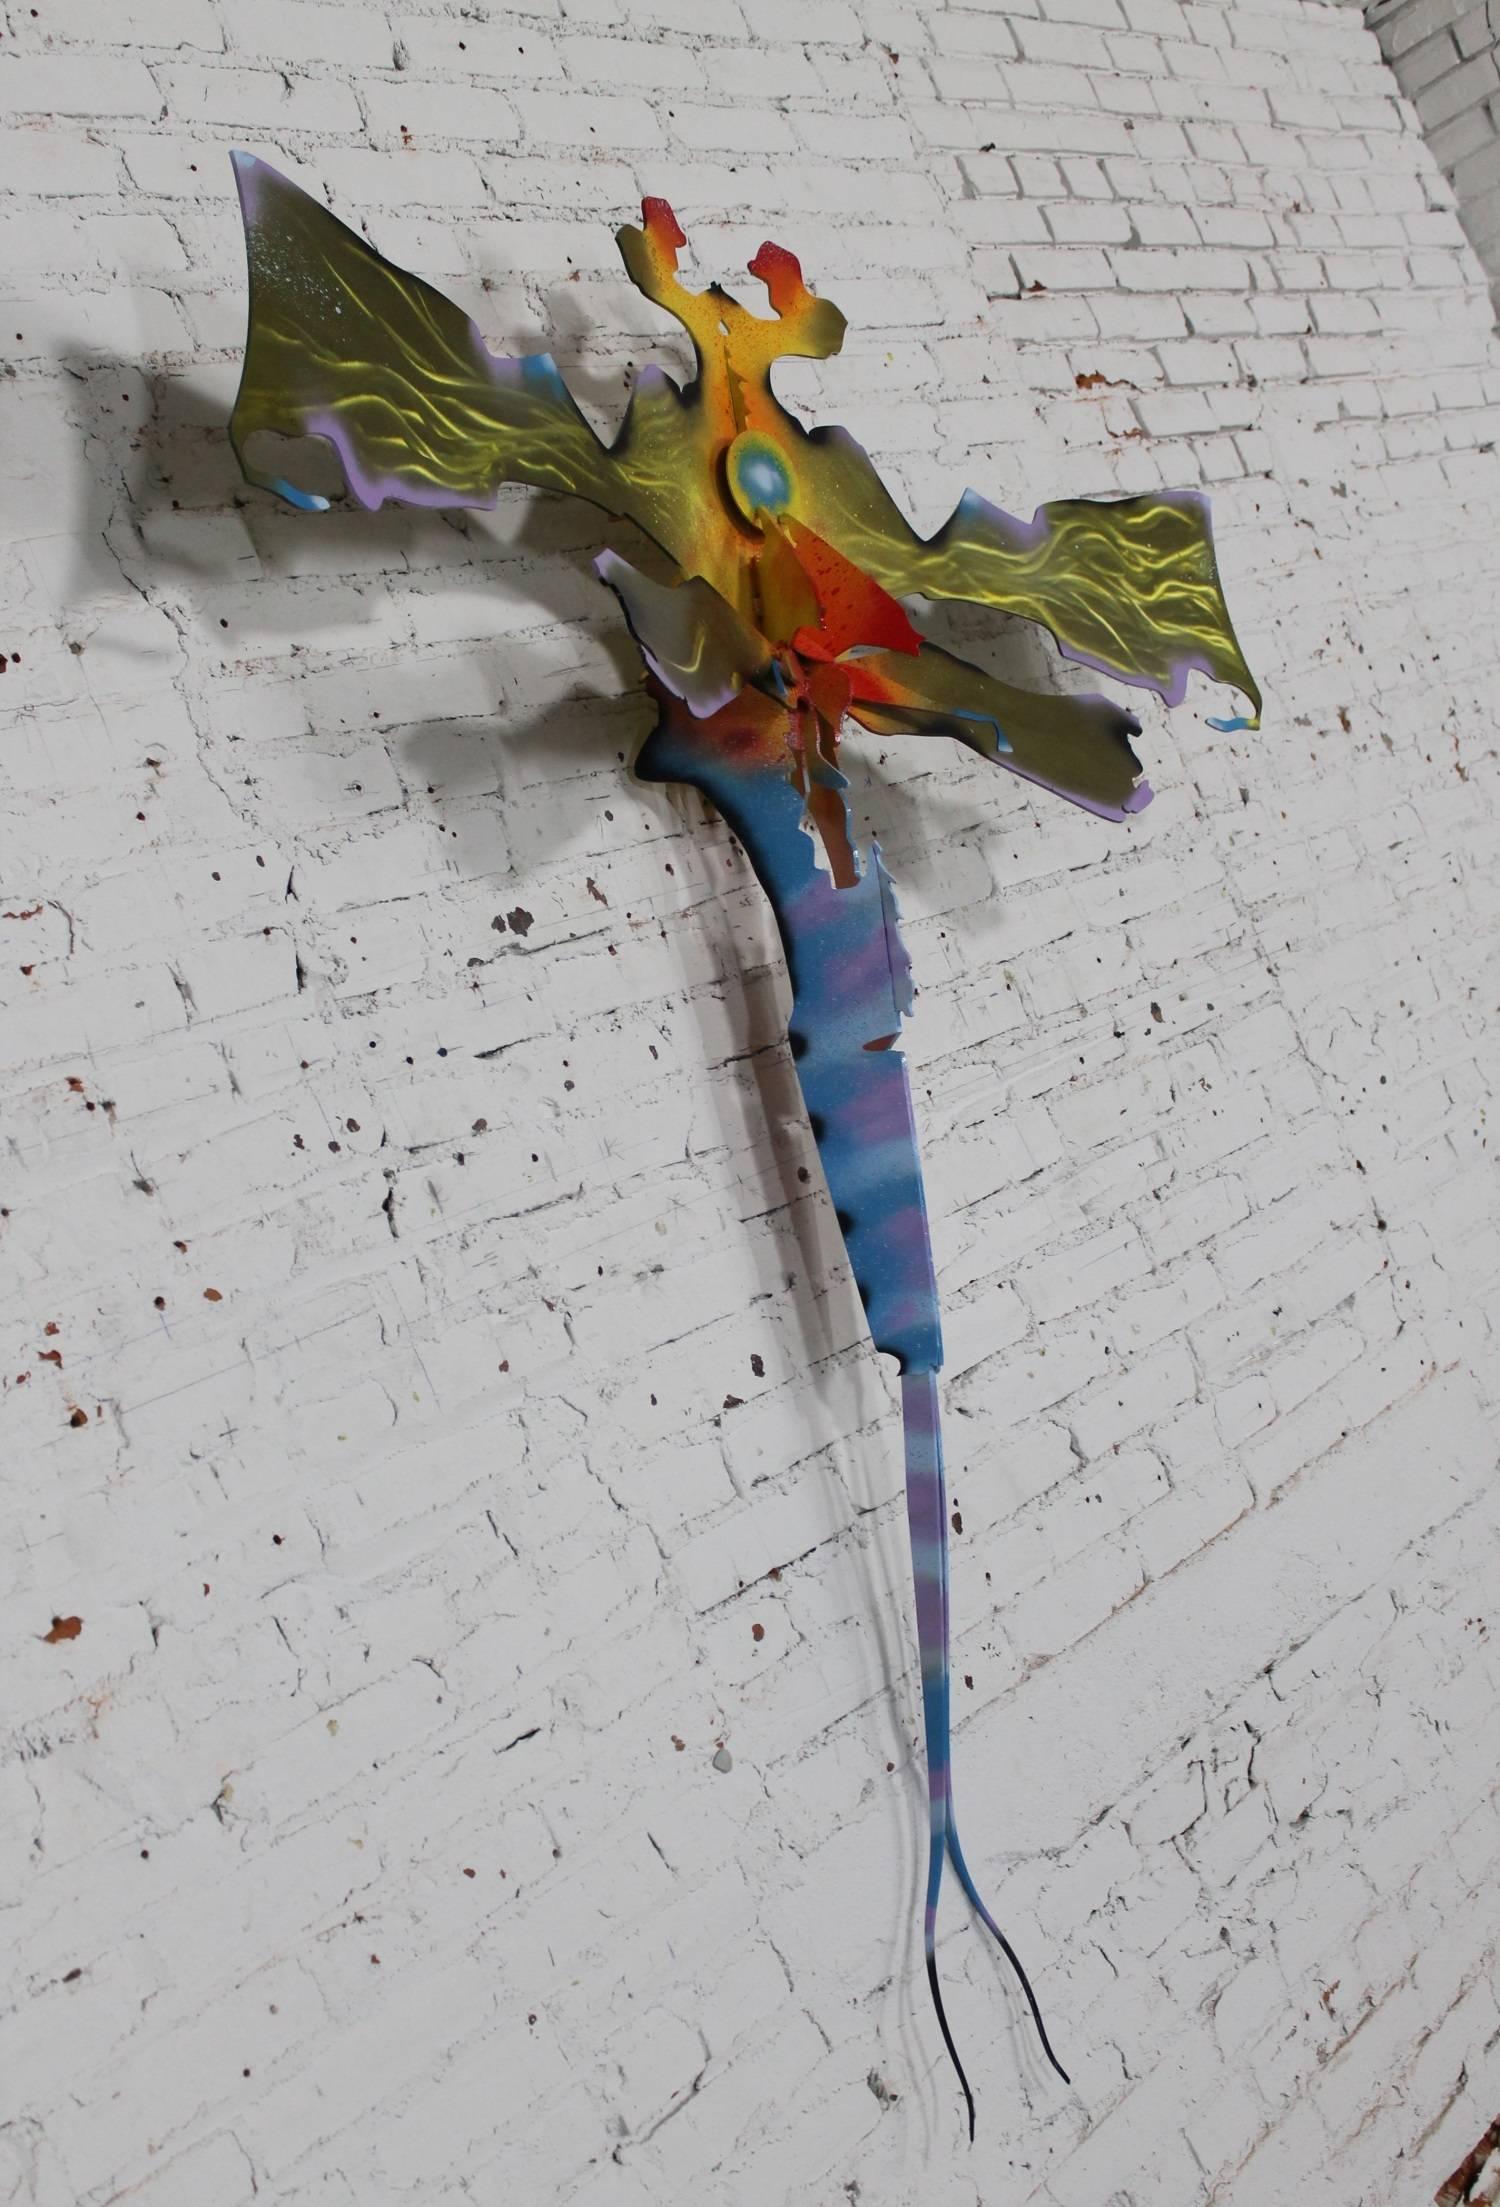 Outsider Art Dragonfly Mayfly Wall Sculpture Garden Sculpture Reclaimed Metal Jason Startup